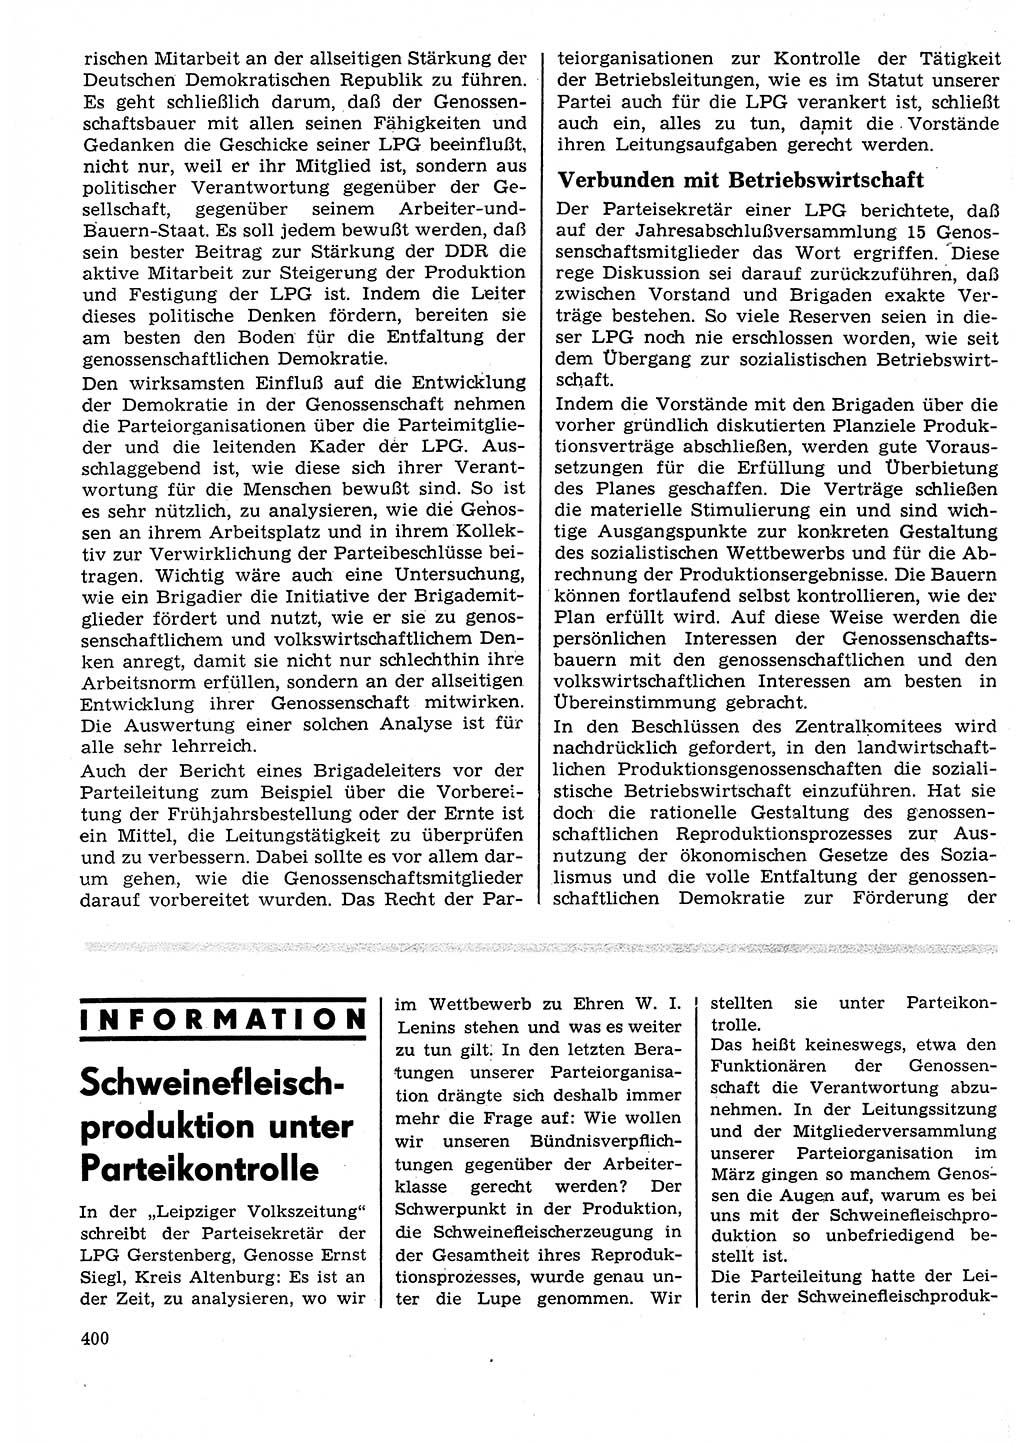 Neuer Weg (NW), Organ des Zentralkomitees (ZK) der SED (Sozialistische Einheitspartei Deutschlands) für Fragen des Parteilebens, 25. Jahrgang [Deutsche Demokratische Republik (DDR)] 1970, Seite 400 (NW ZK SED DDR 1970, S. 400)